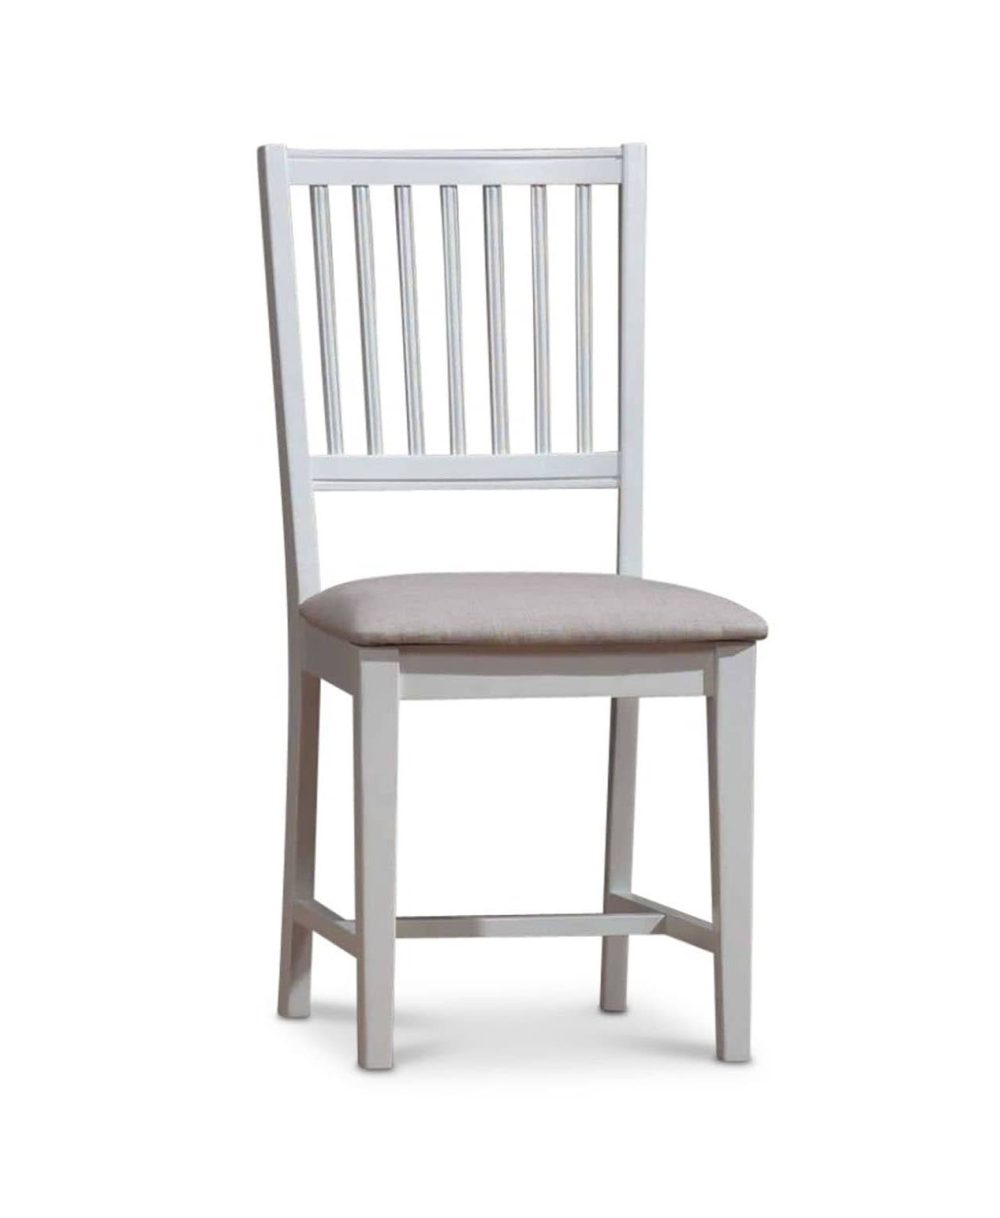 orsa-chair-white-profile-1.jpg